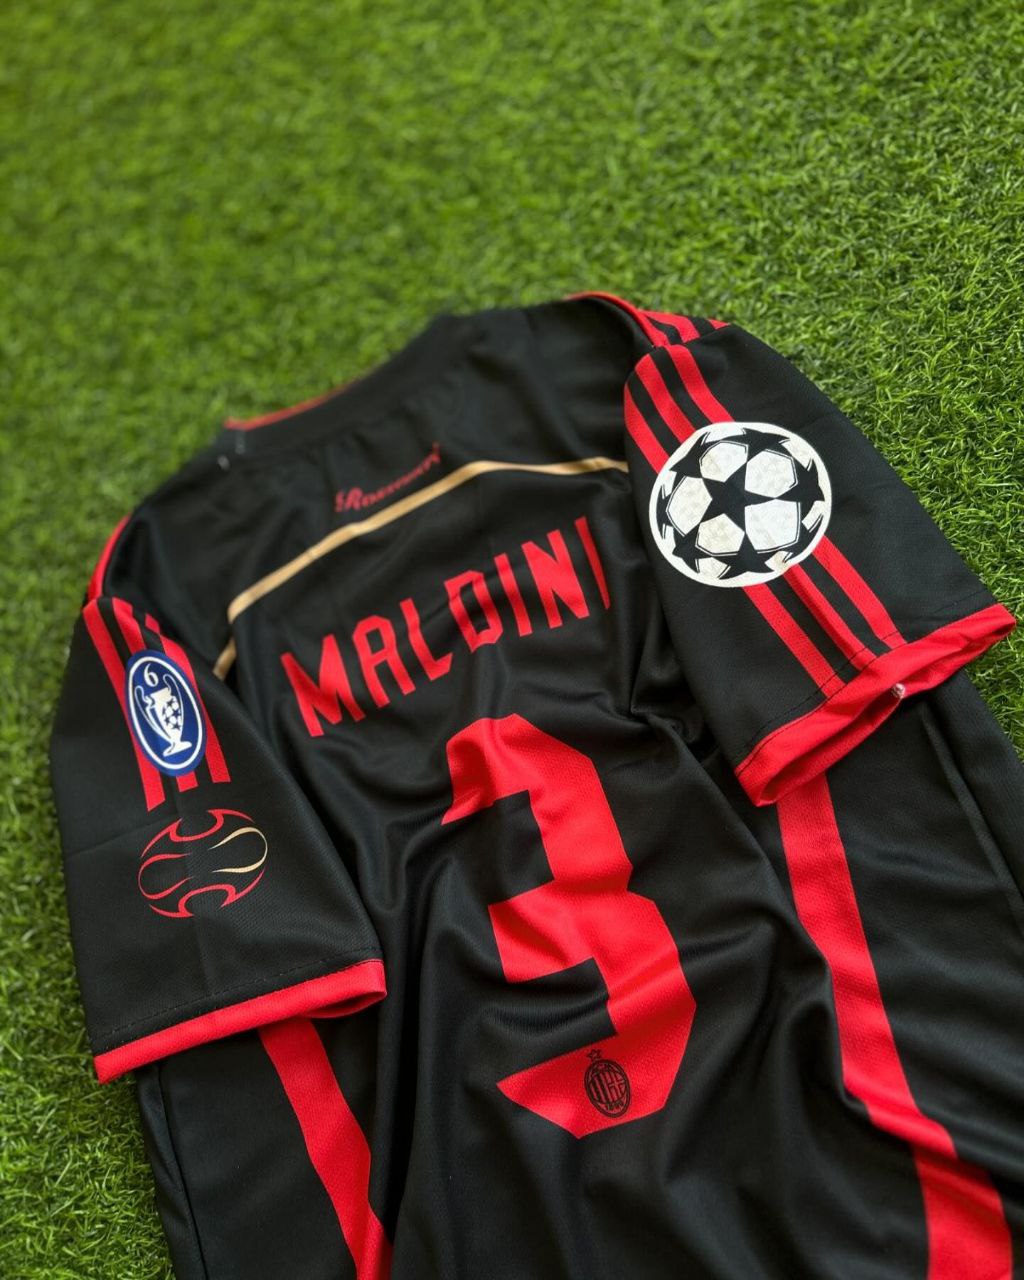 Paolo Maldini AC Milan Retro Jersey